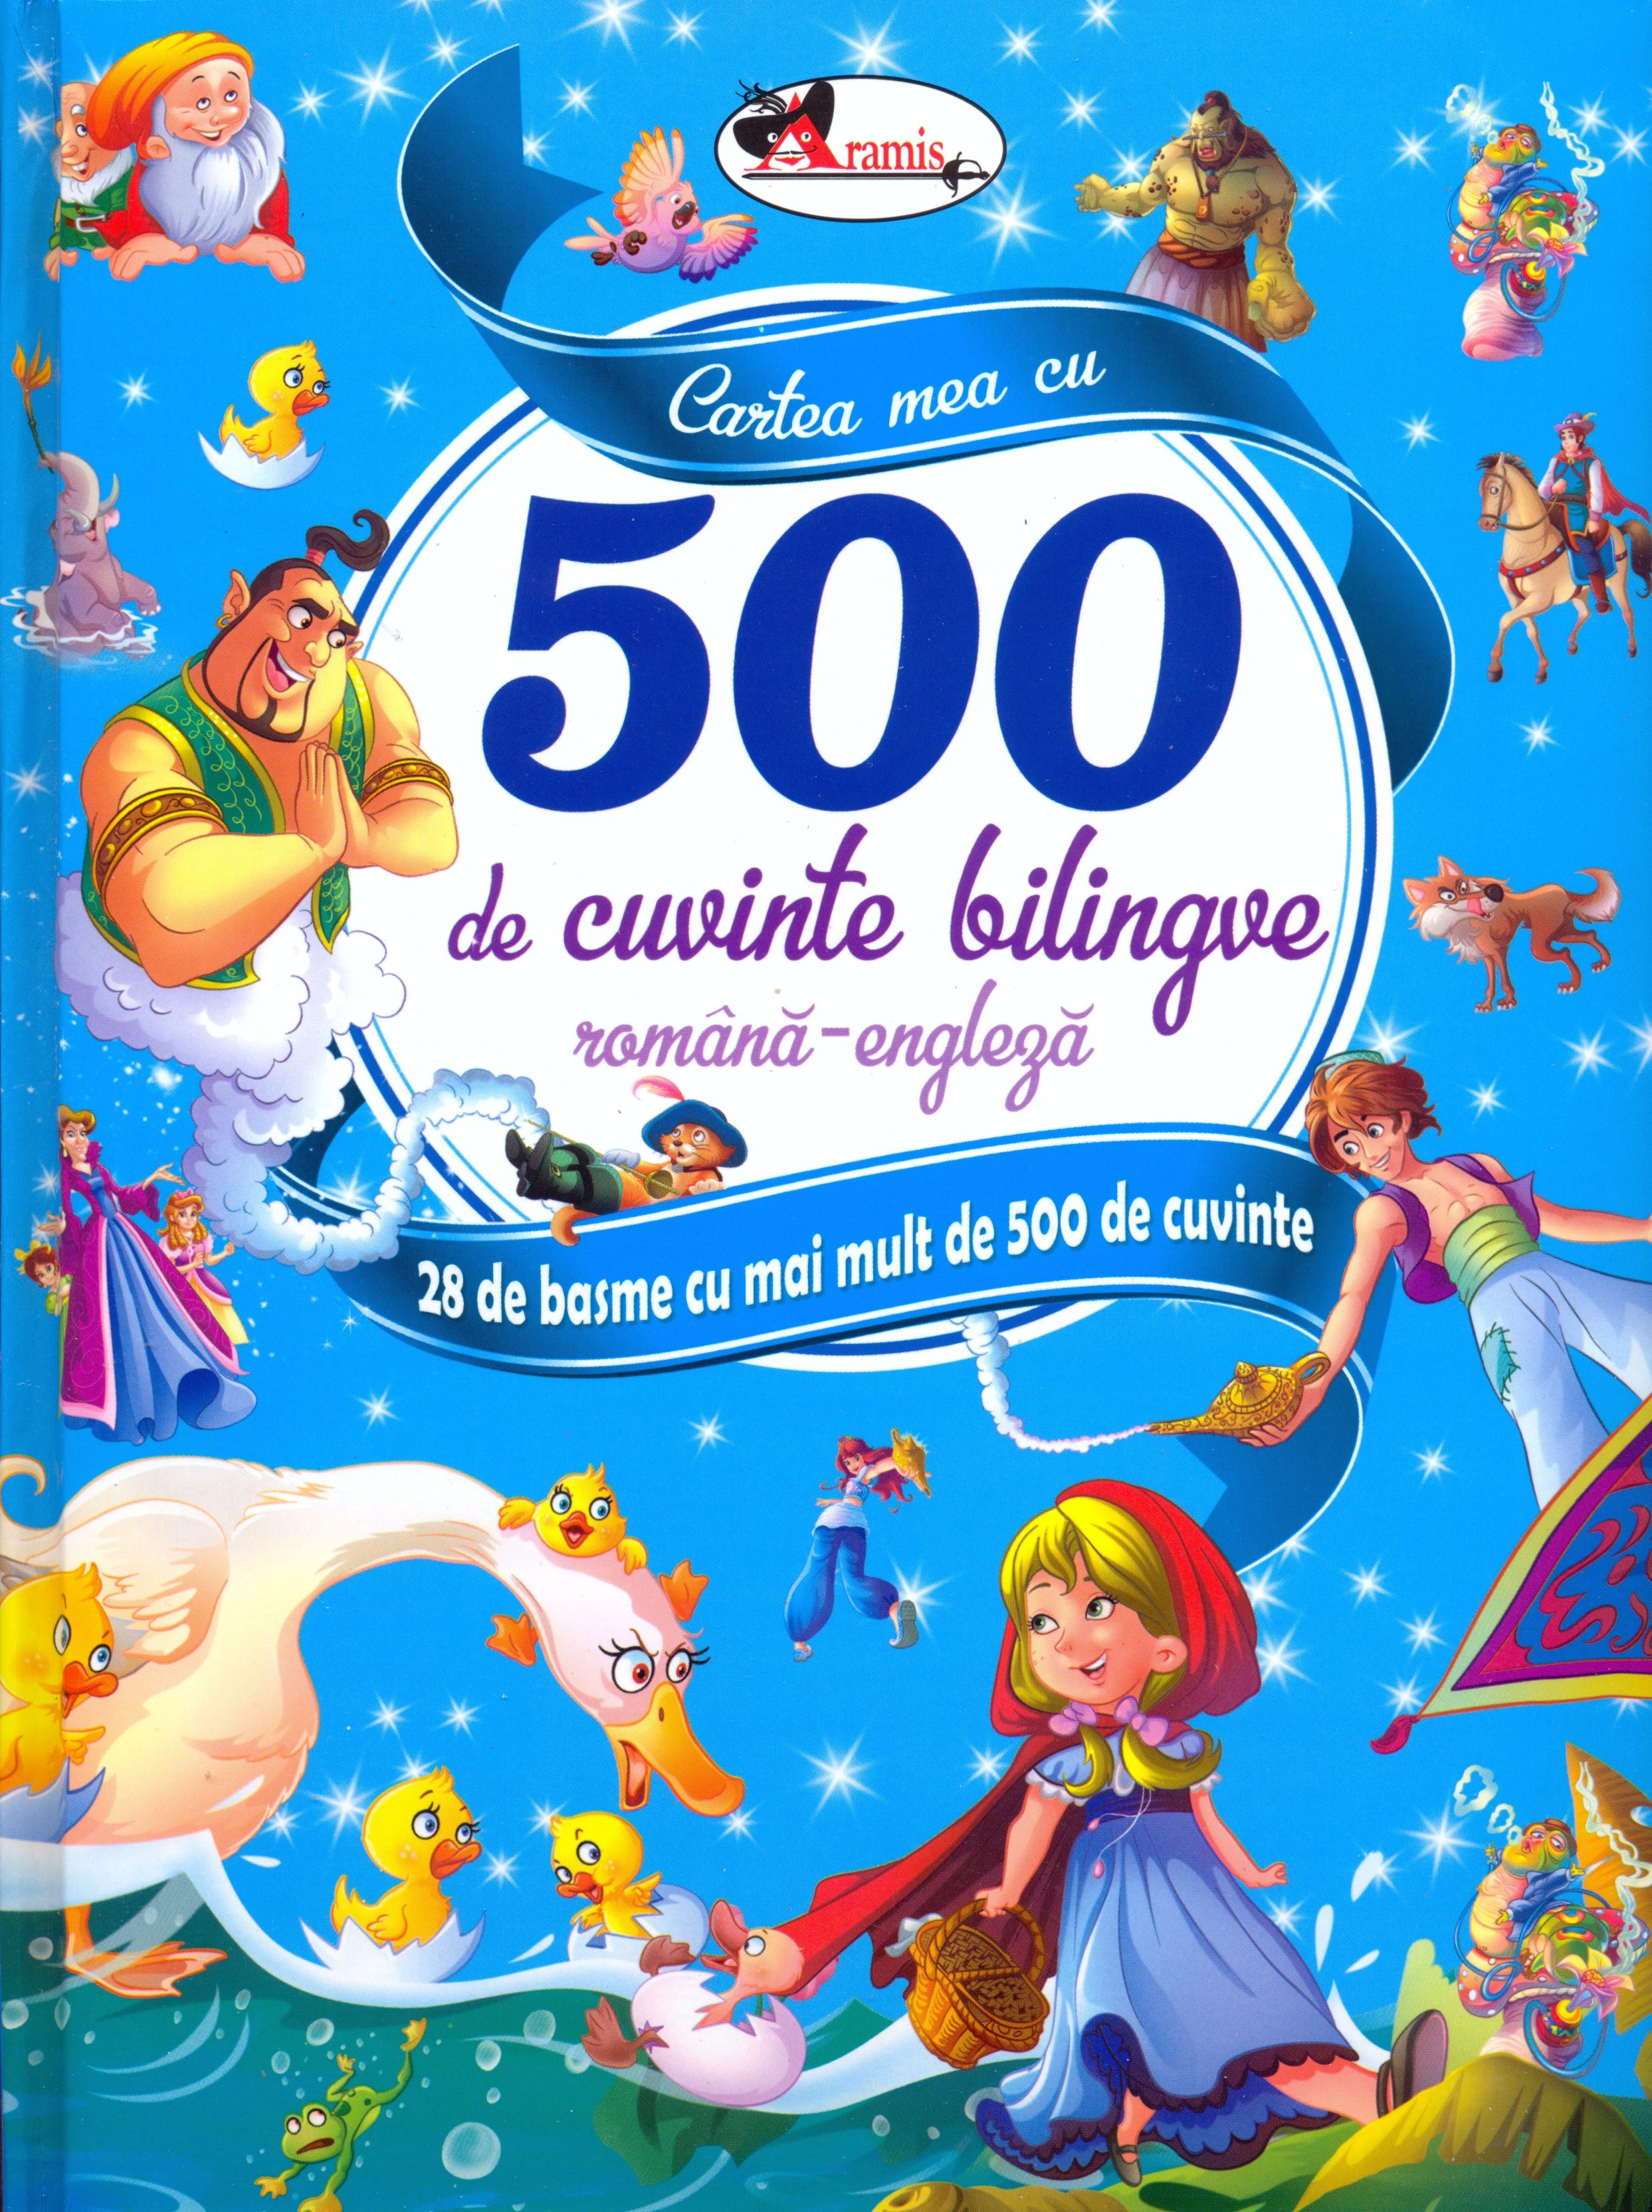 Cartea mea cu 500 de cuvinte bilingve | 